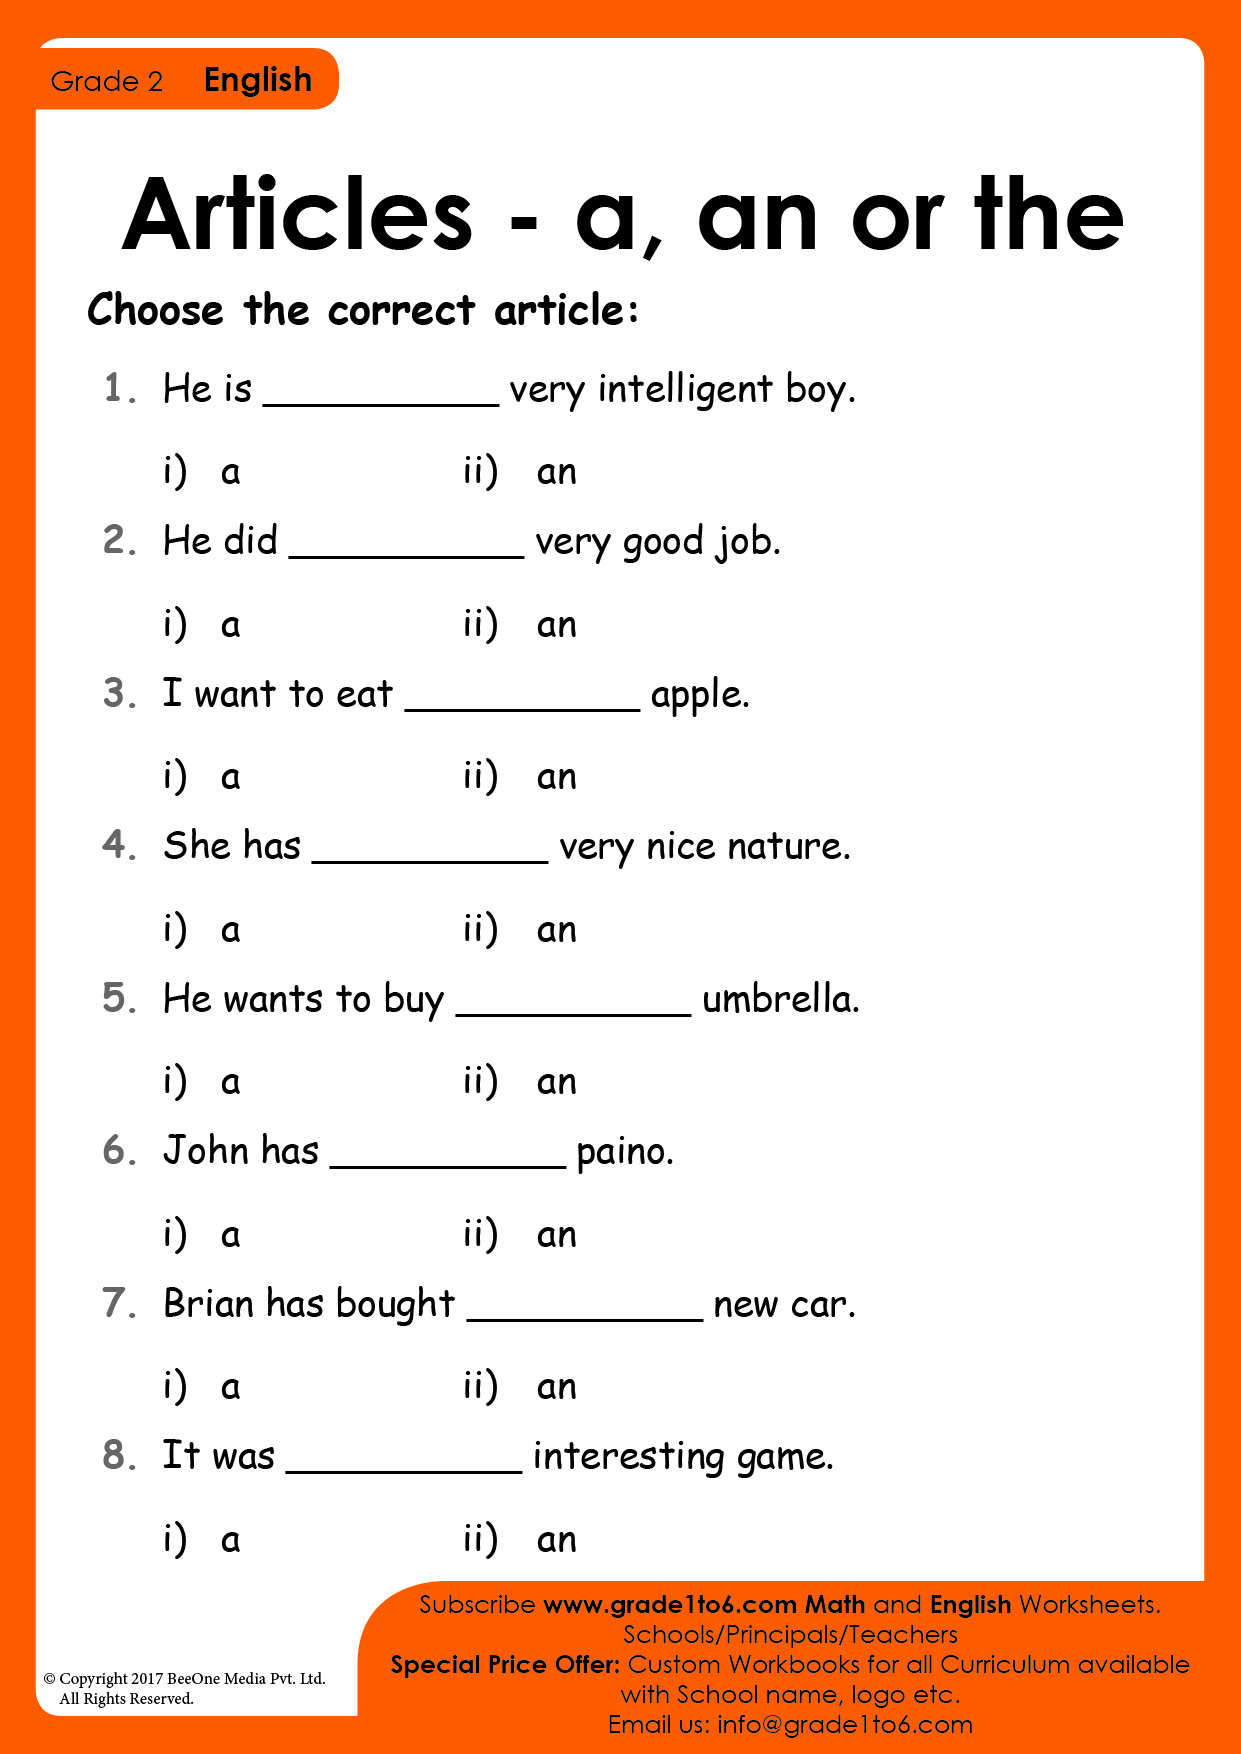 cl-2-worksheets-english-worksheets-for-kindergarten